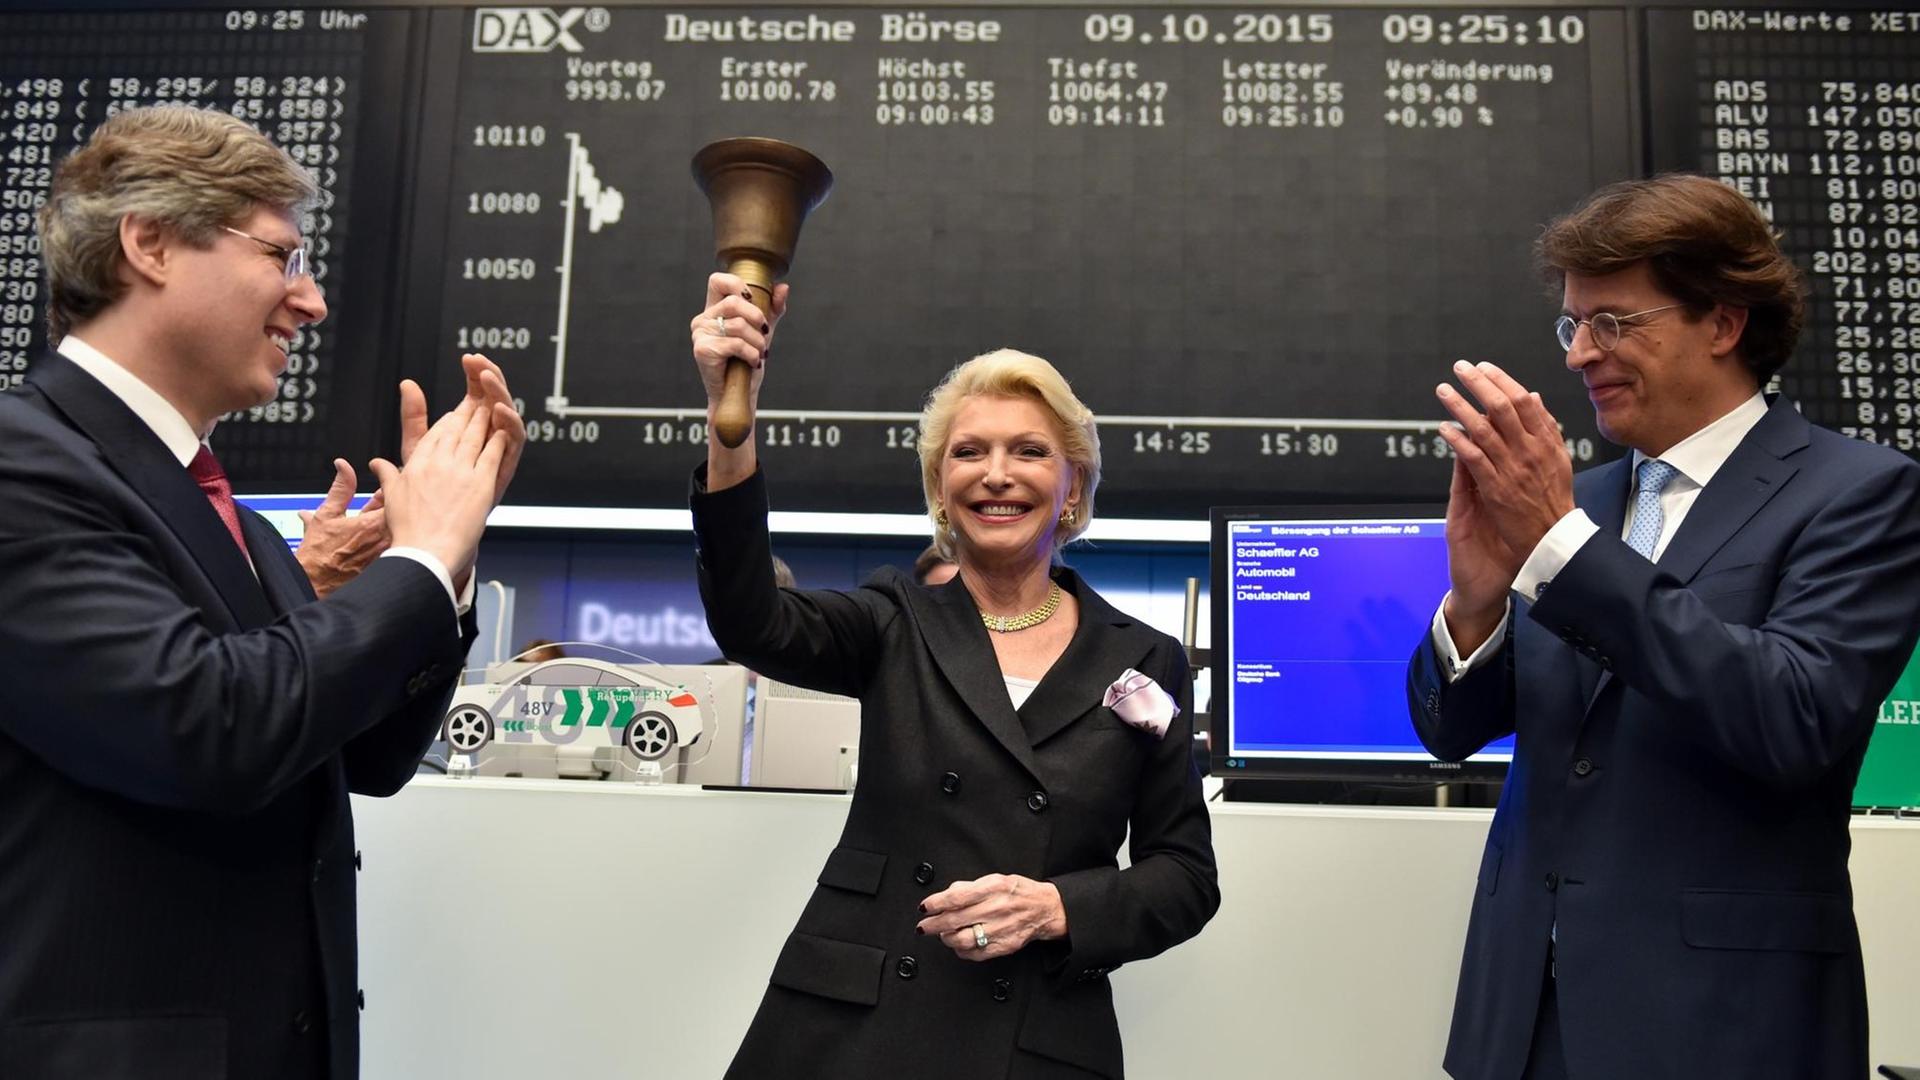 Maria-Elisabeth Schaeffler-Thumann schwingt beim Börsengang des Unternehmens im Oktober 2015 in Frankfurt die Börsenglocke. Ihr Sohn und Aufsichtsratschef Georg Schaeffler und Vorstandschef Klaus Rosenfeld (rechts) applaudieren.